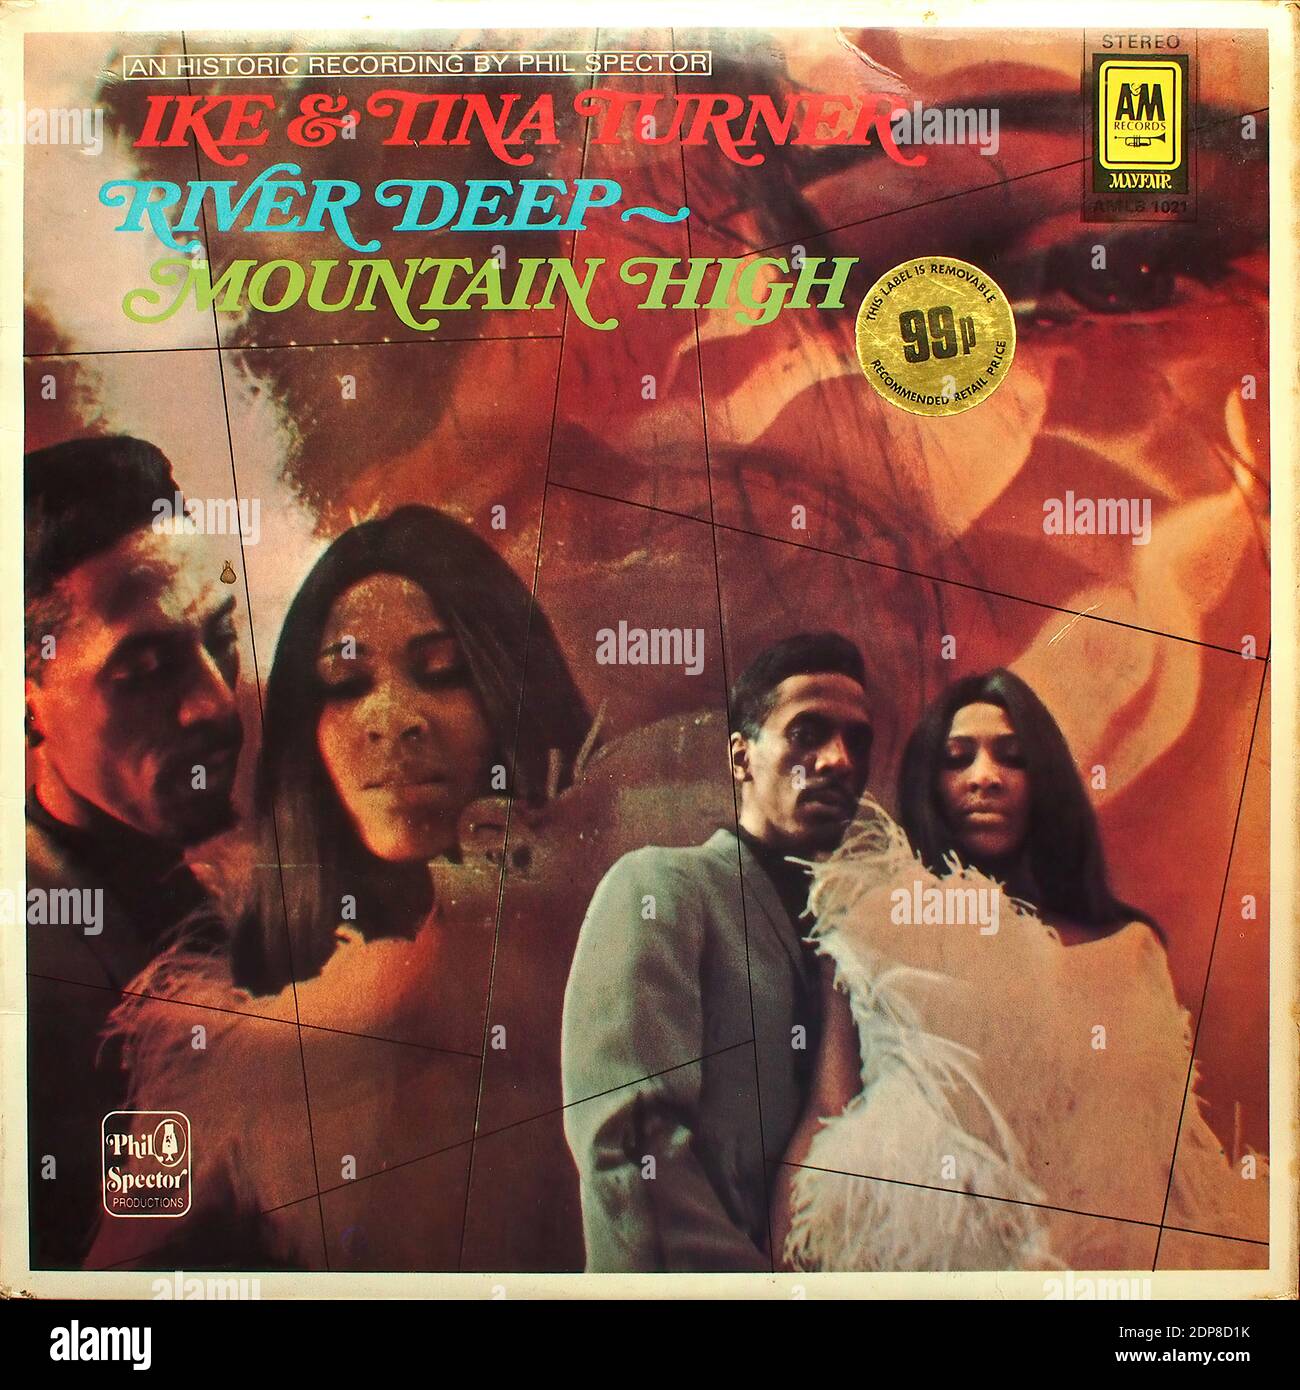 IKE & Tina Turner - River Deep-Mountain High - A Registrazione storica di Phil Spector - A&M Records Mayfair AMLB 1021 - copertina dell'album in vinile d'epoca Foto Stock